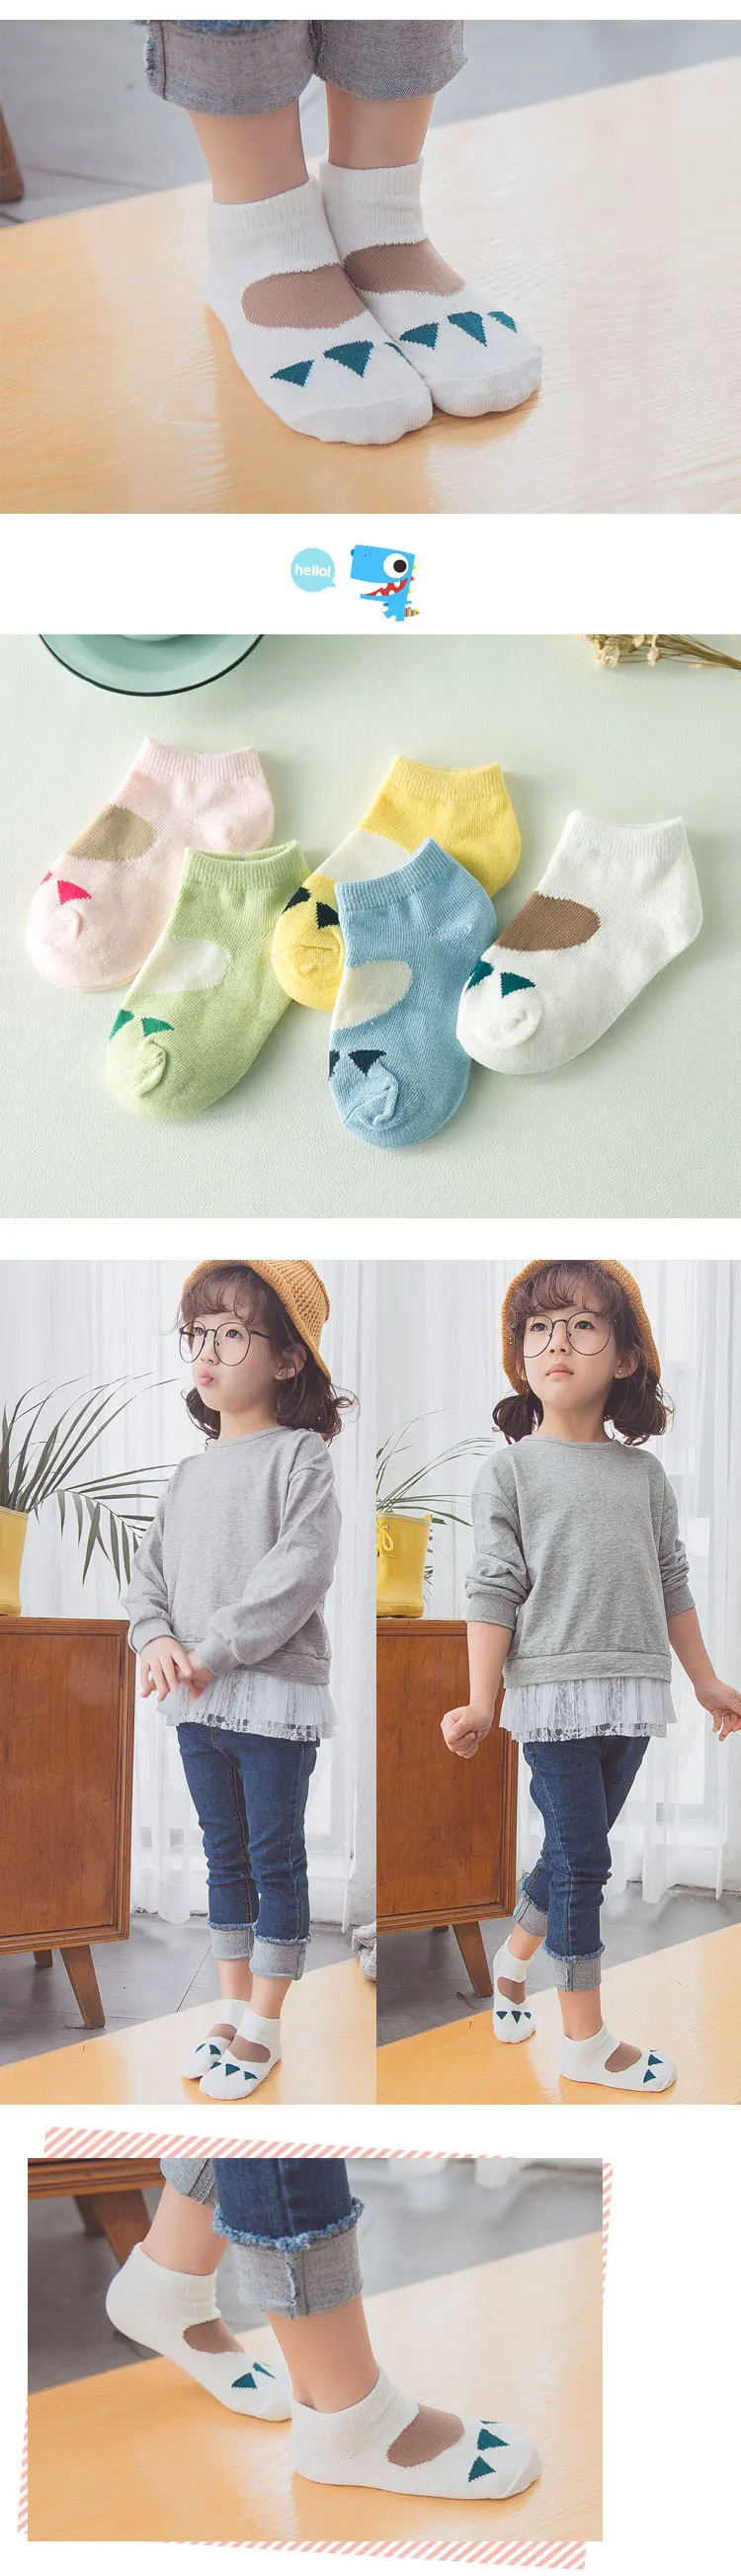 5 пара/лот, носки для малышей хлопковые детские носки для девочек и мальчиков, От 1 до 10 лет г., новые носки для малышей на осень и зиму